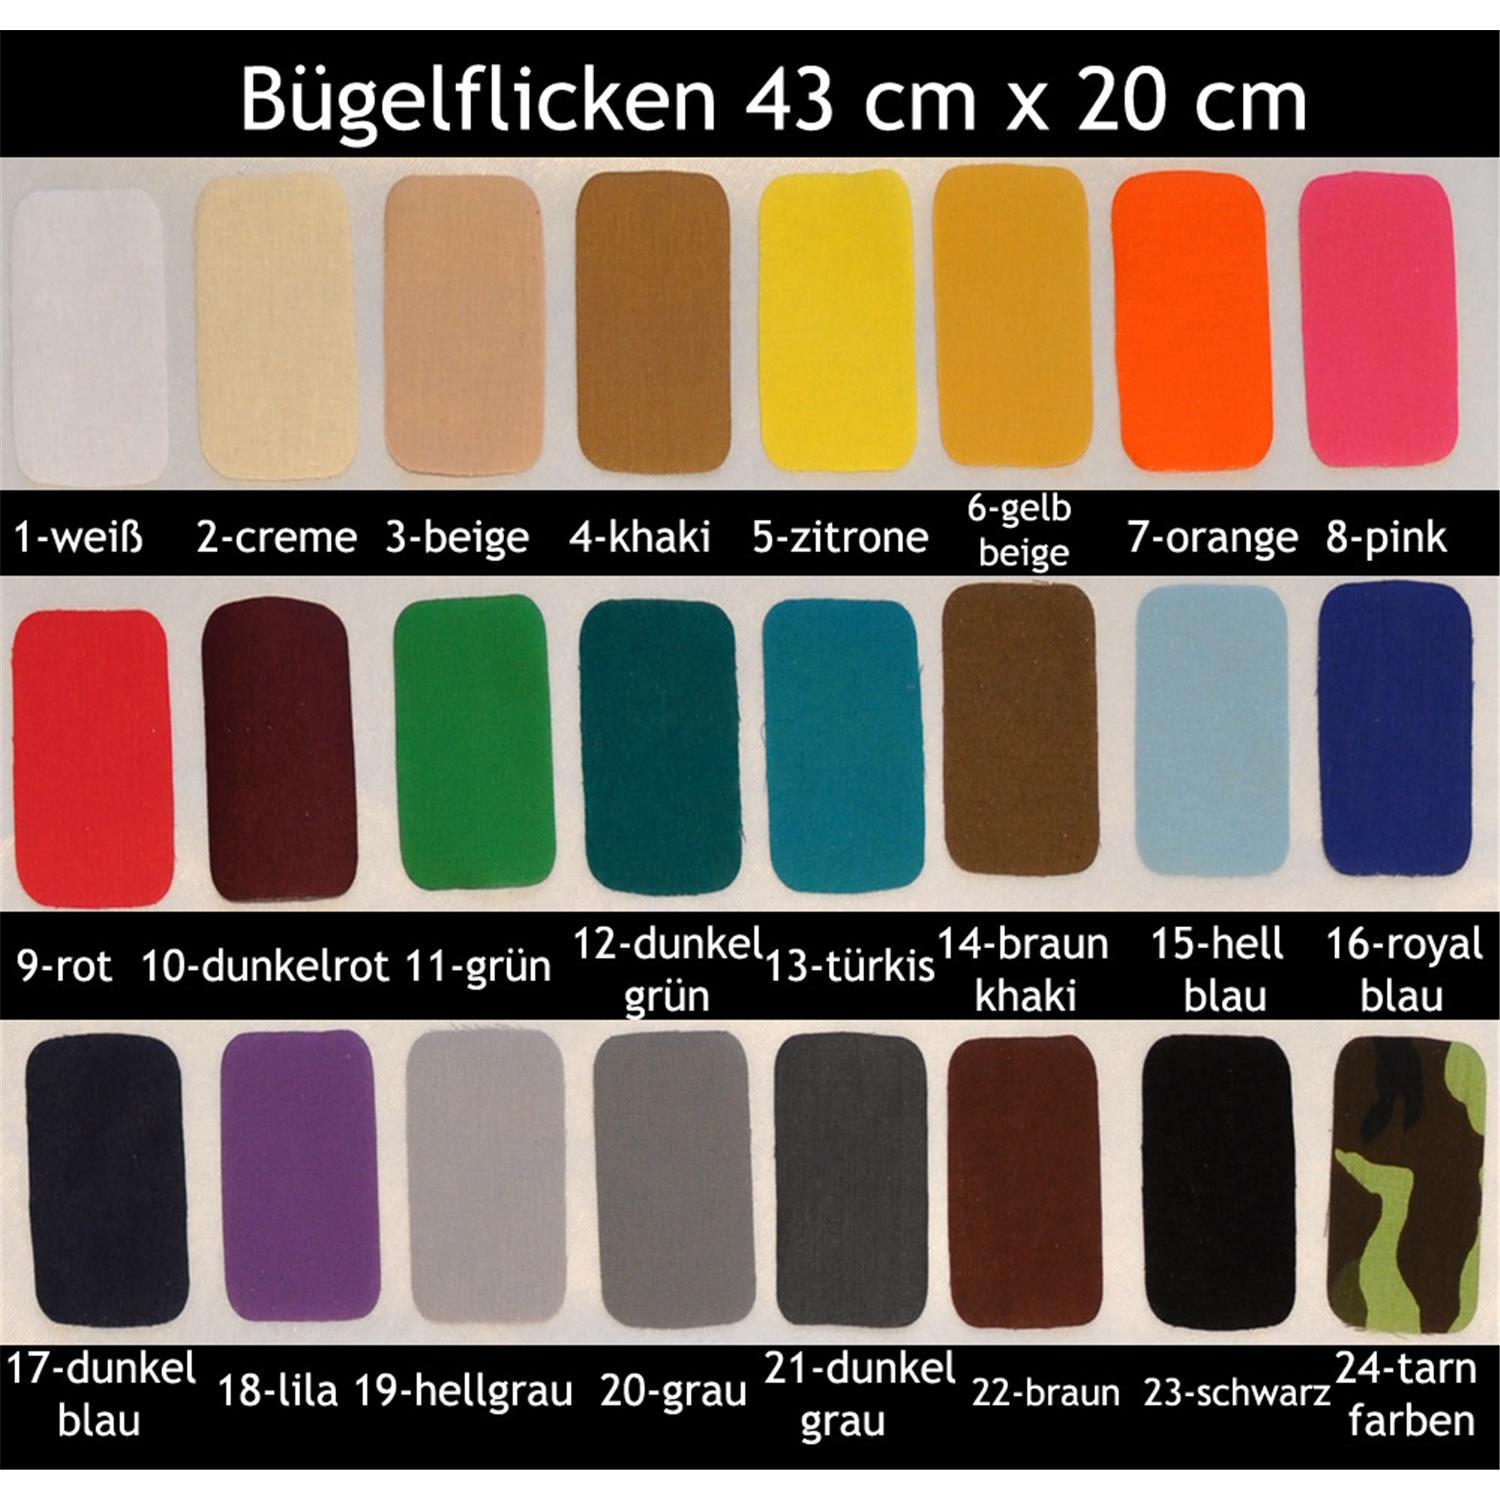 1 XXXL - Bügelflicken 43x20 cm, 24 Farben zur Auswahl 1